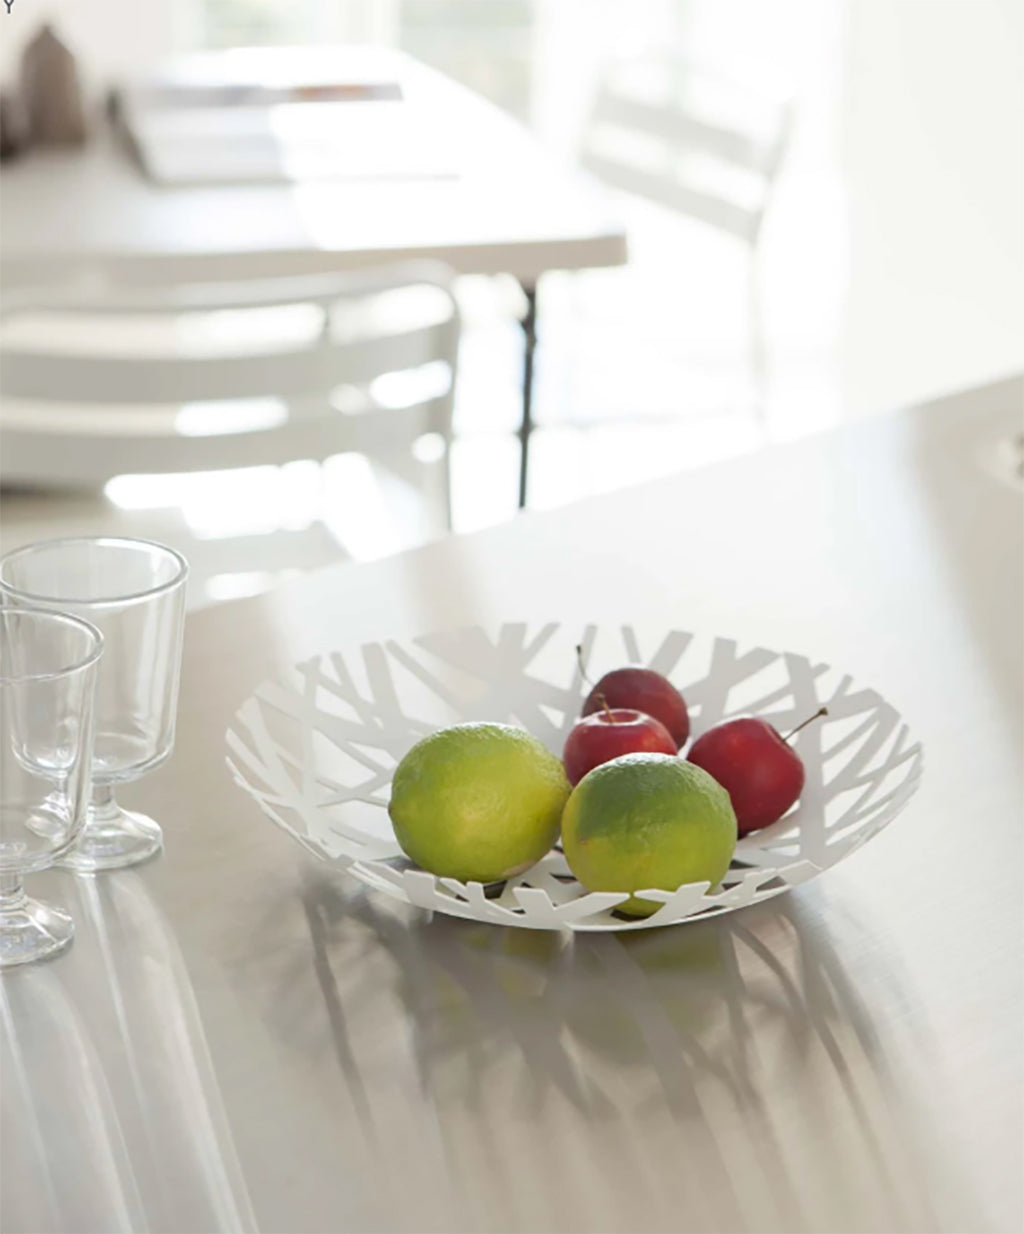 Yamazaki tower fruit bowl on table with fruit white